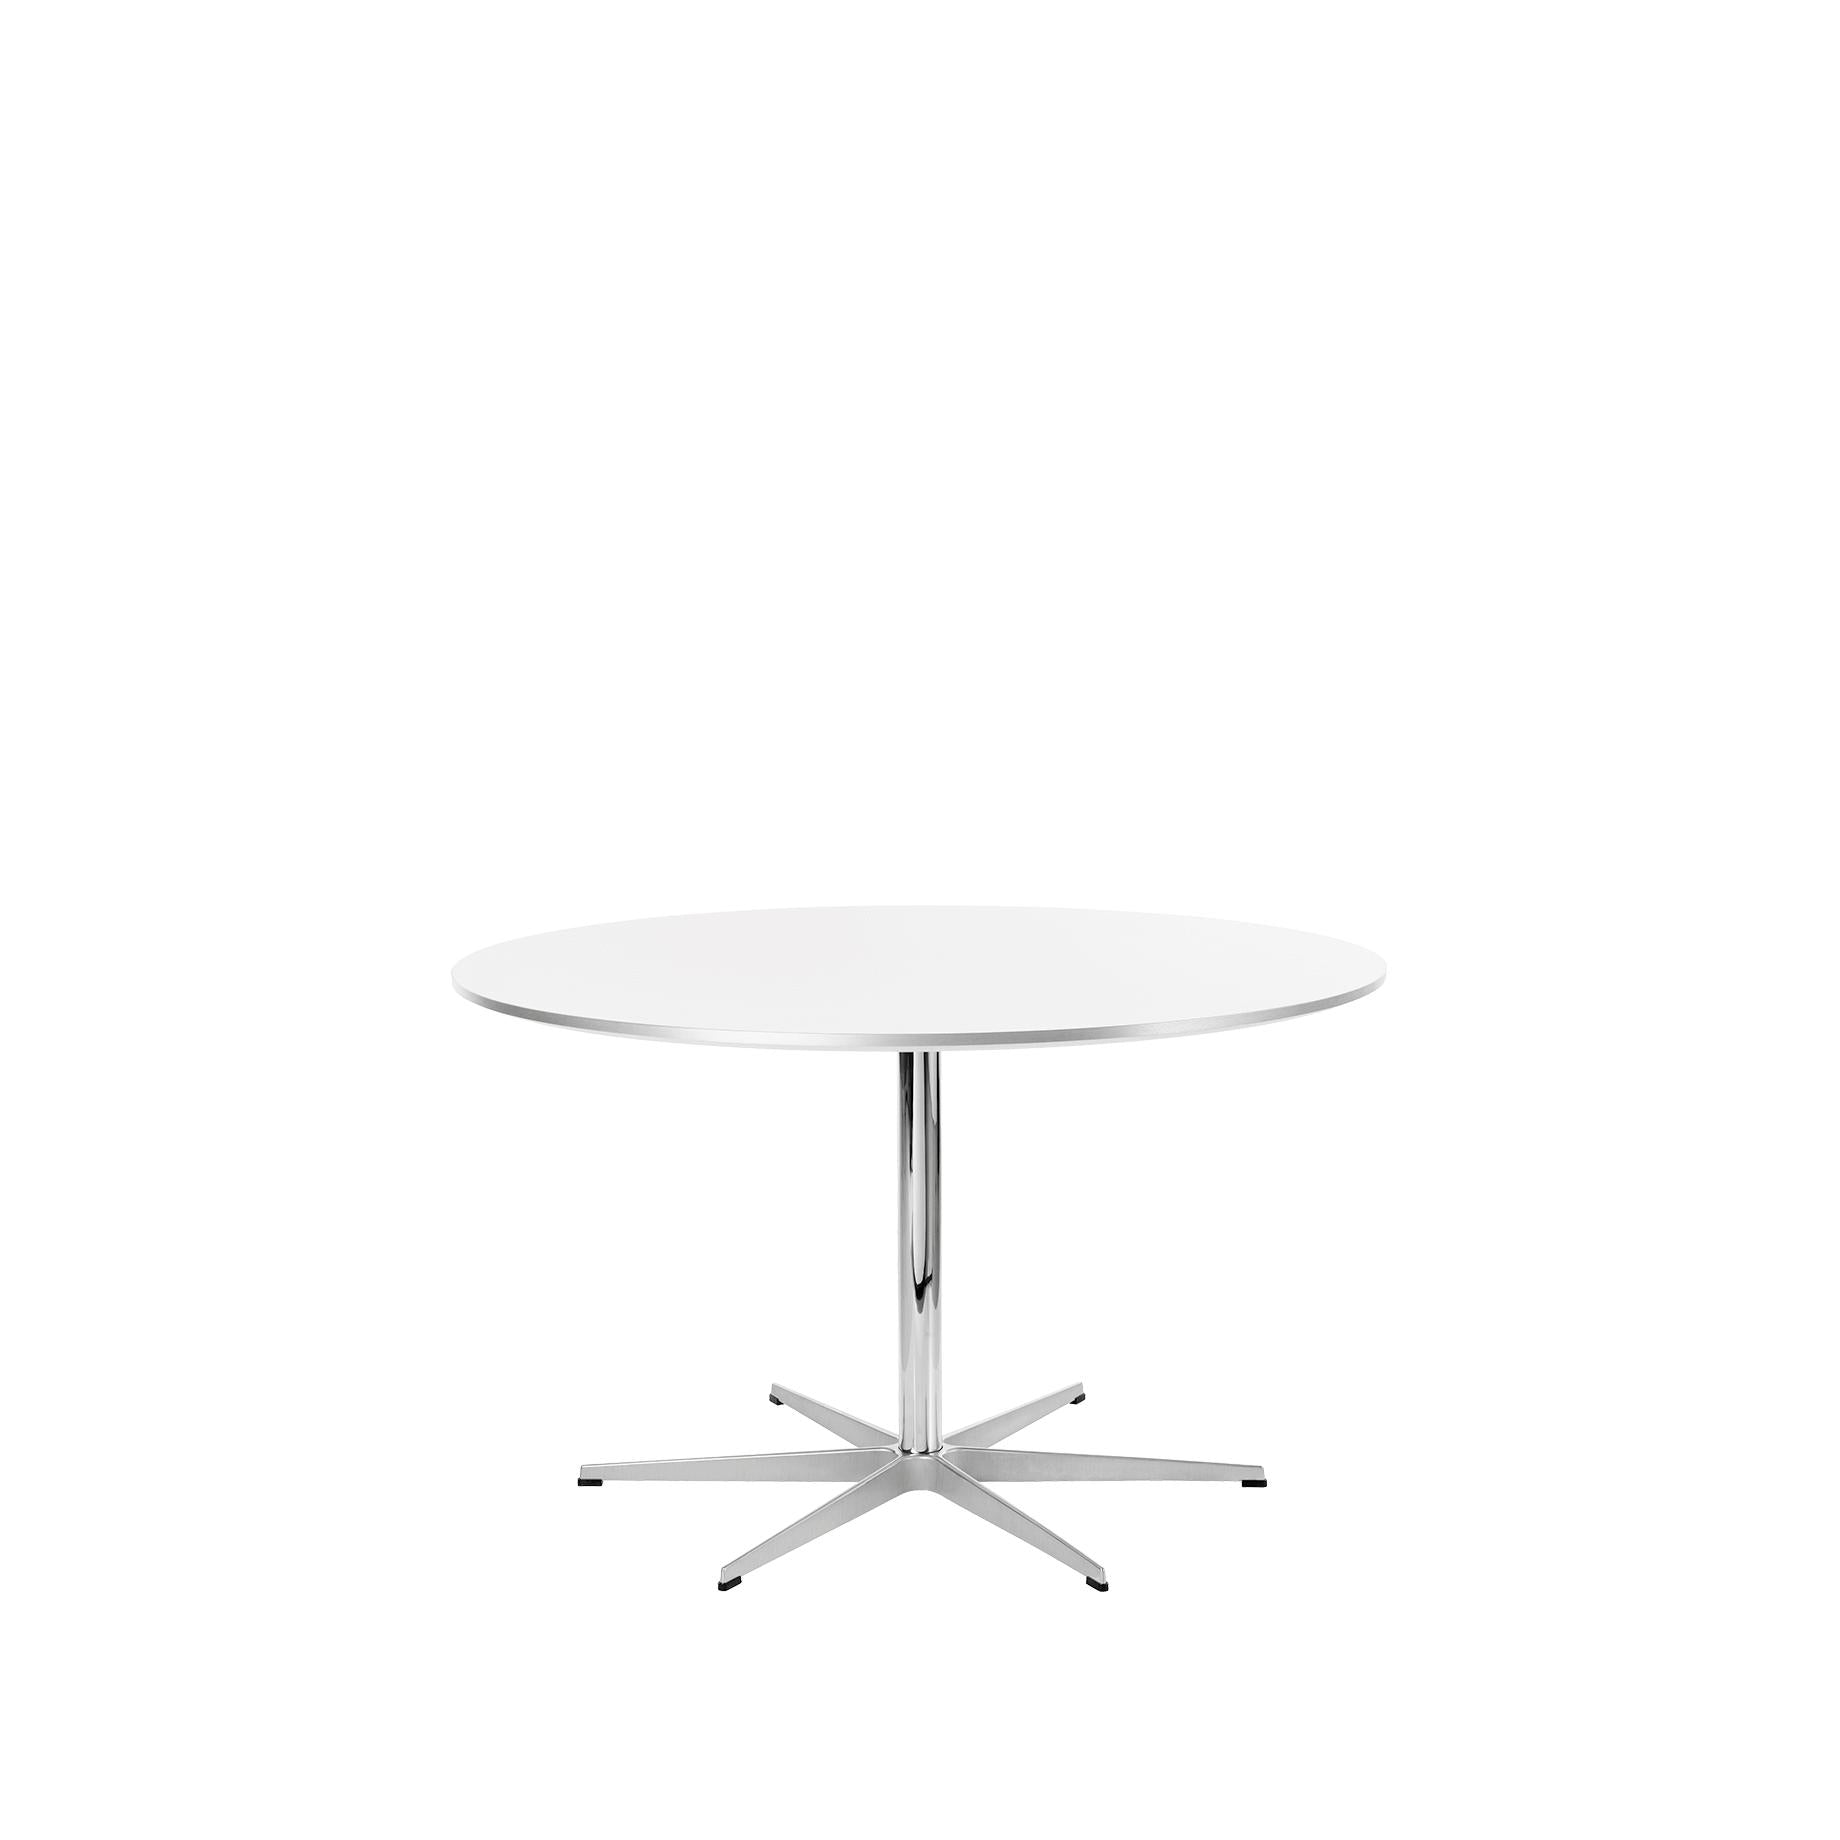 Kruhový stůl Fritz Hansen Ø145 cm, bílý laminát